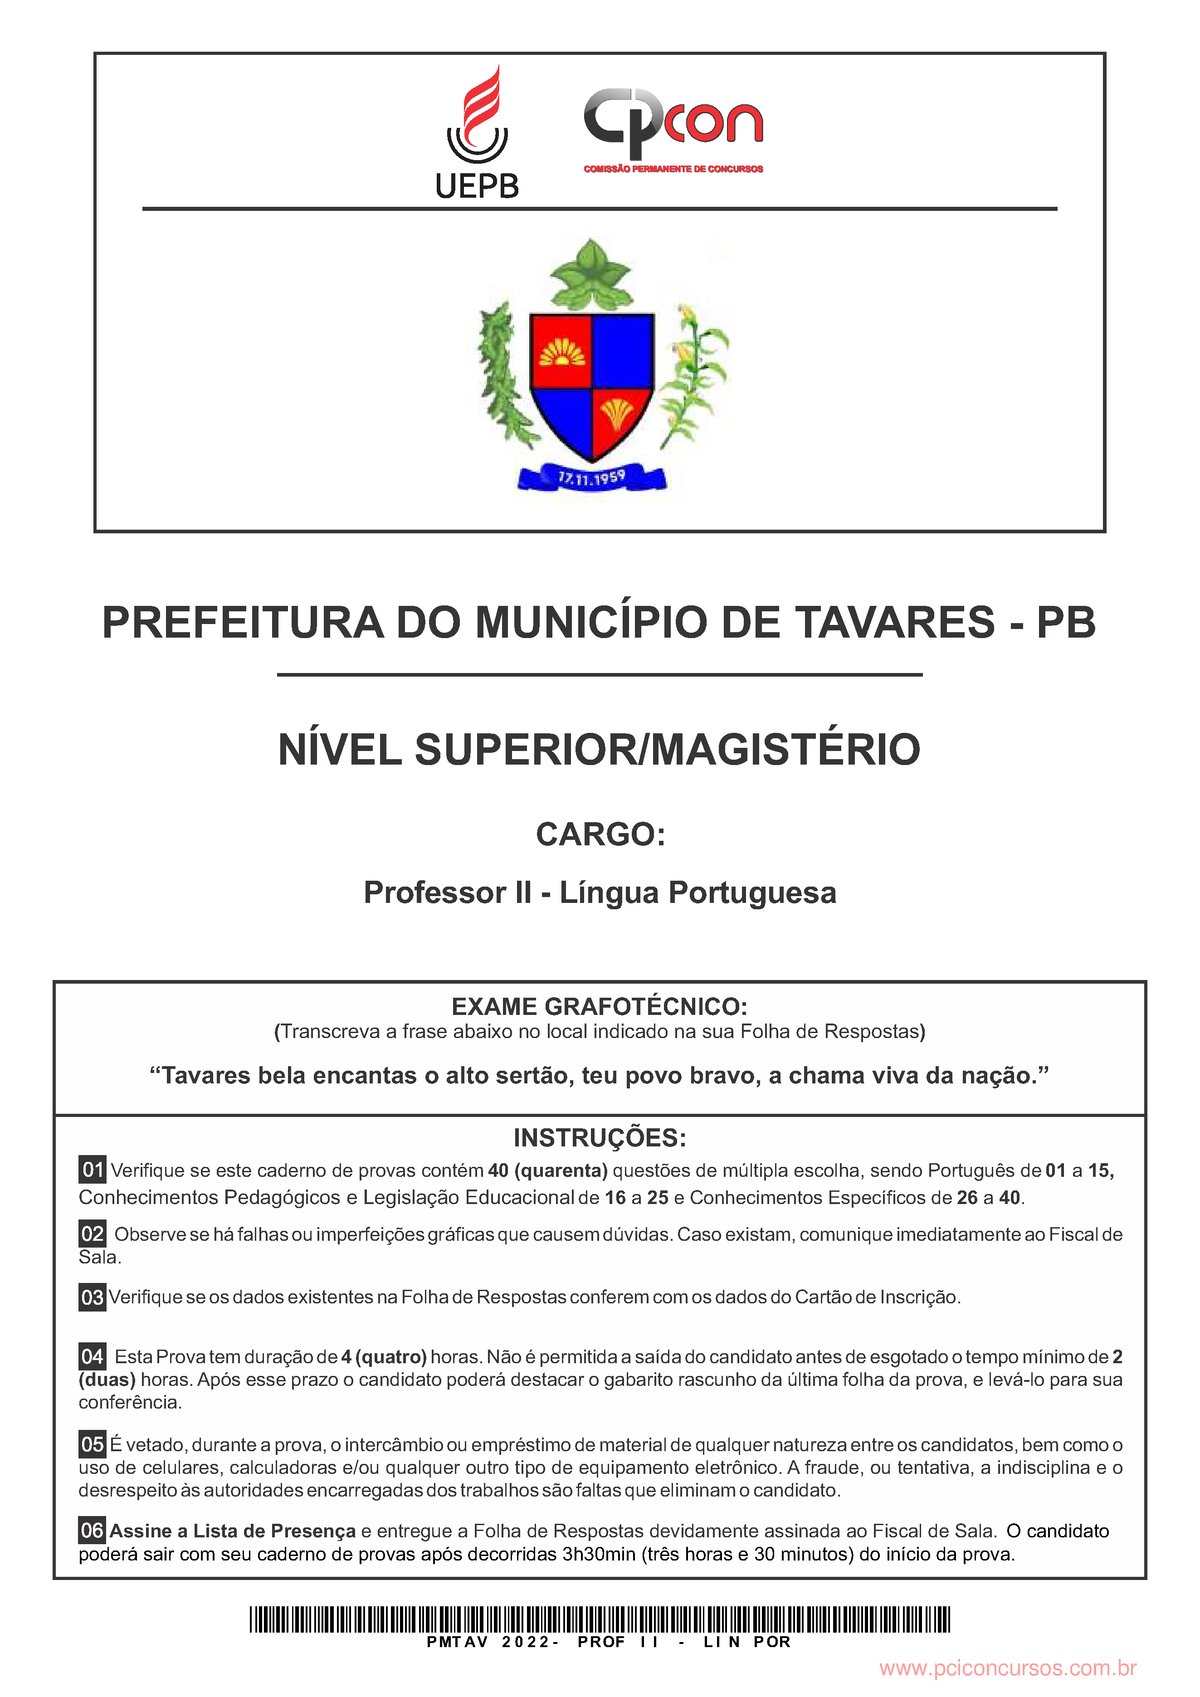 Direito da UNIBR está entre um dos que mais aprova no Exame de Ordem -  UNIBR - Faculdade de São Vicente